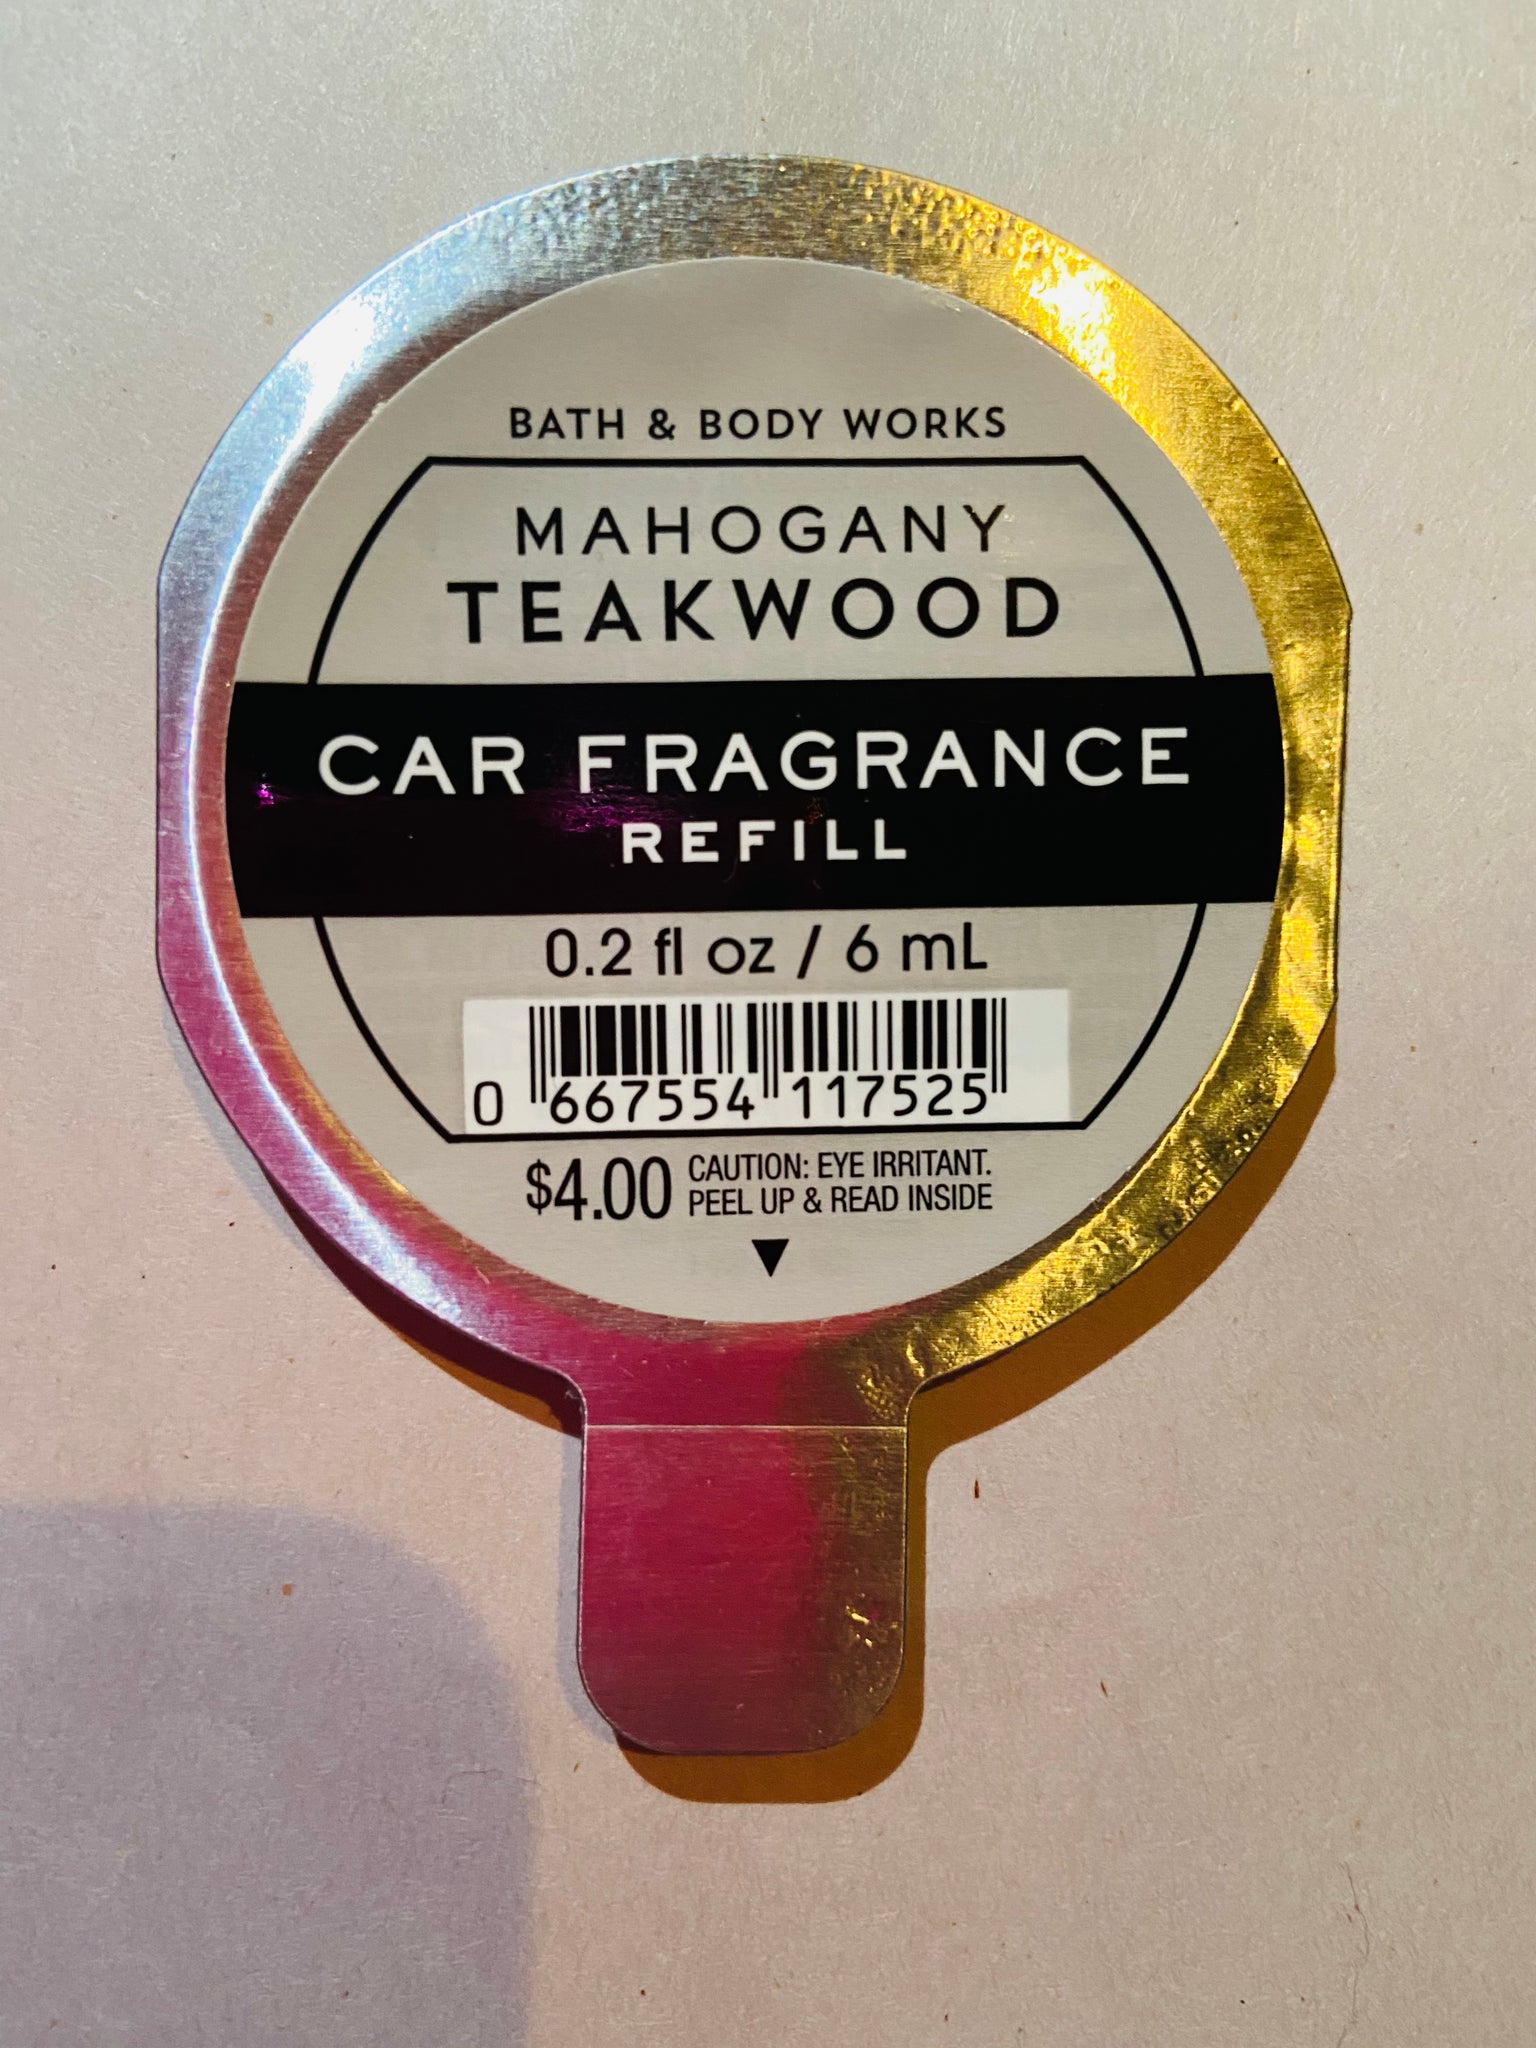 Bath & Body Works Mahogany Teakwood Car Fragrance Refill - Car Air Freshener  'Mahogany Teakwood